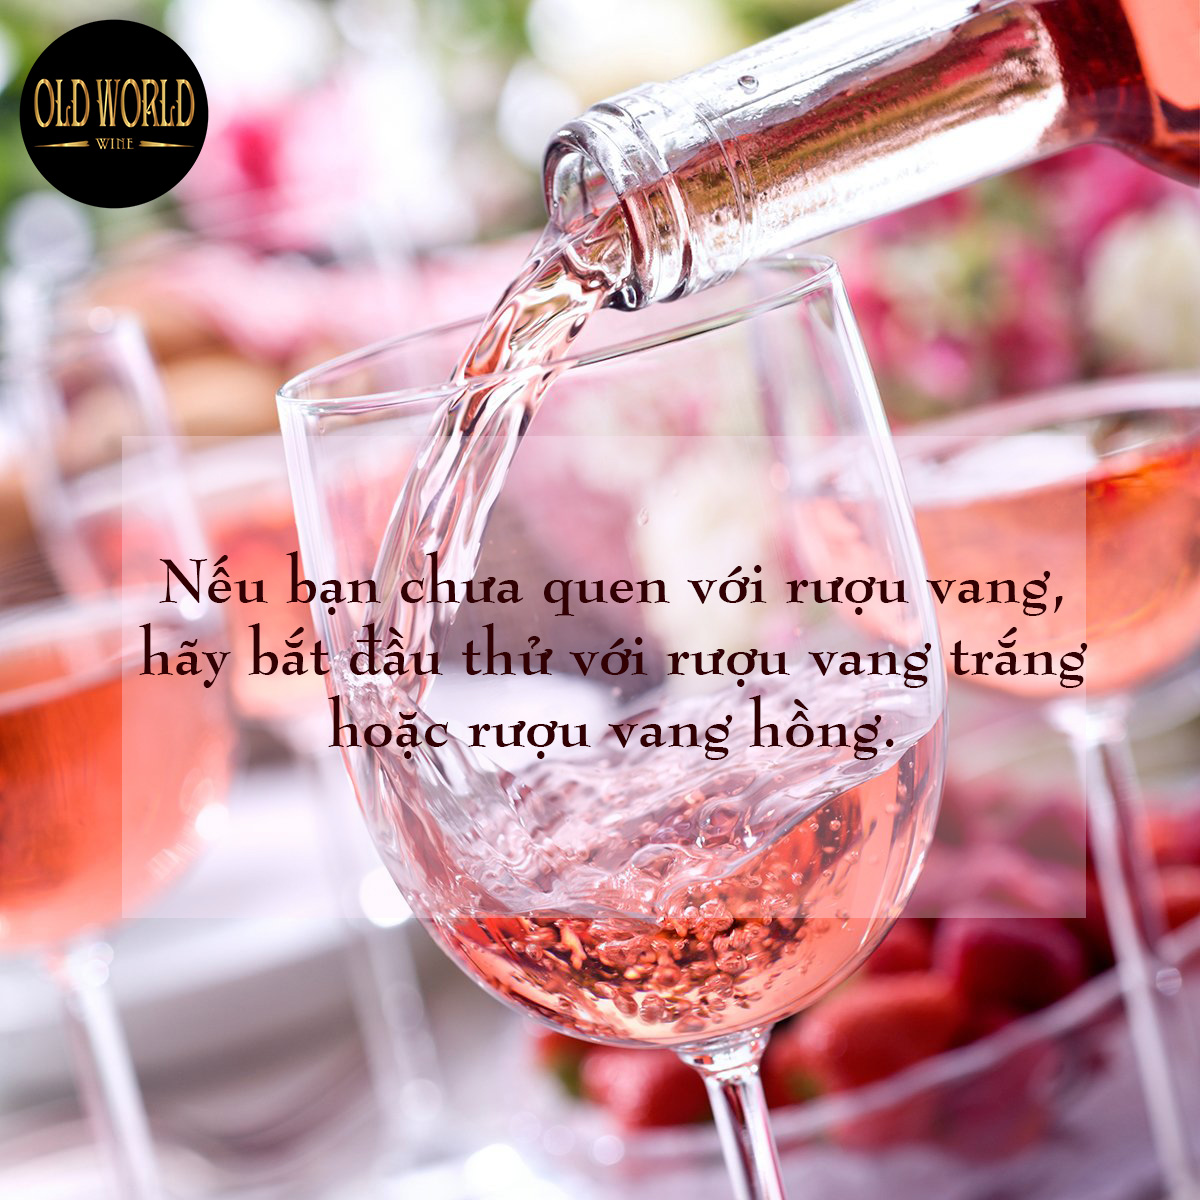 Nếu bạn chưa quen với rượu vang, hãy bắt đầu với rượu vang trắng hoặc rượu vang hồng.